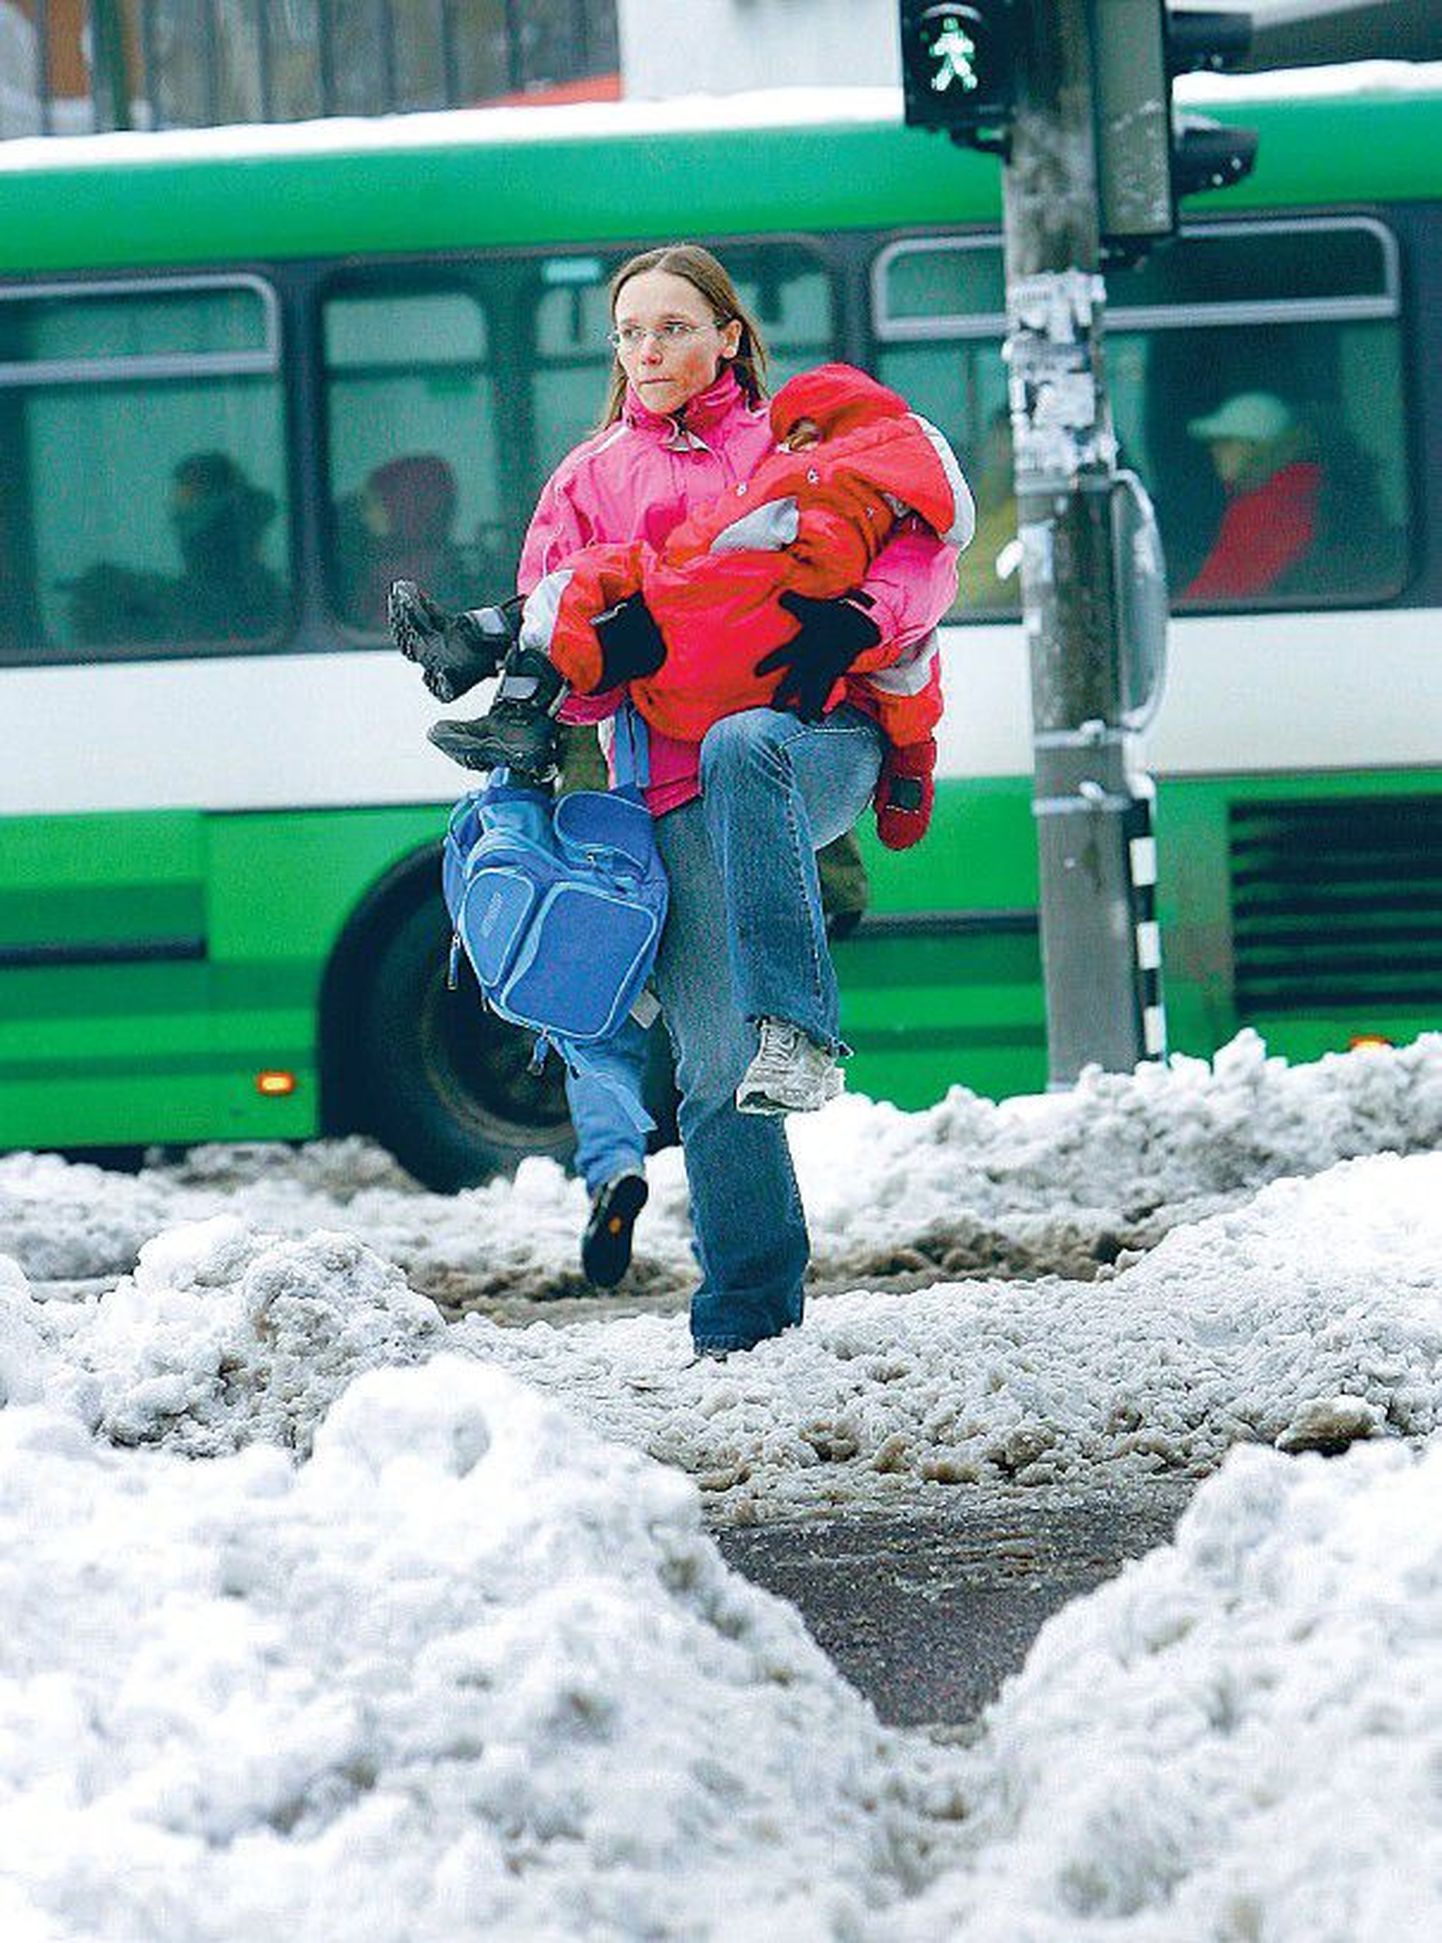 Kesklinna kõnniteedel pidid inimesed üle tänava pääsemiseks lumes sumpama.